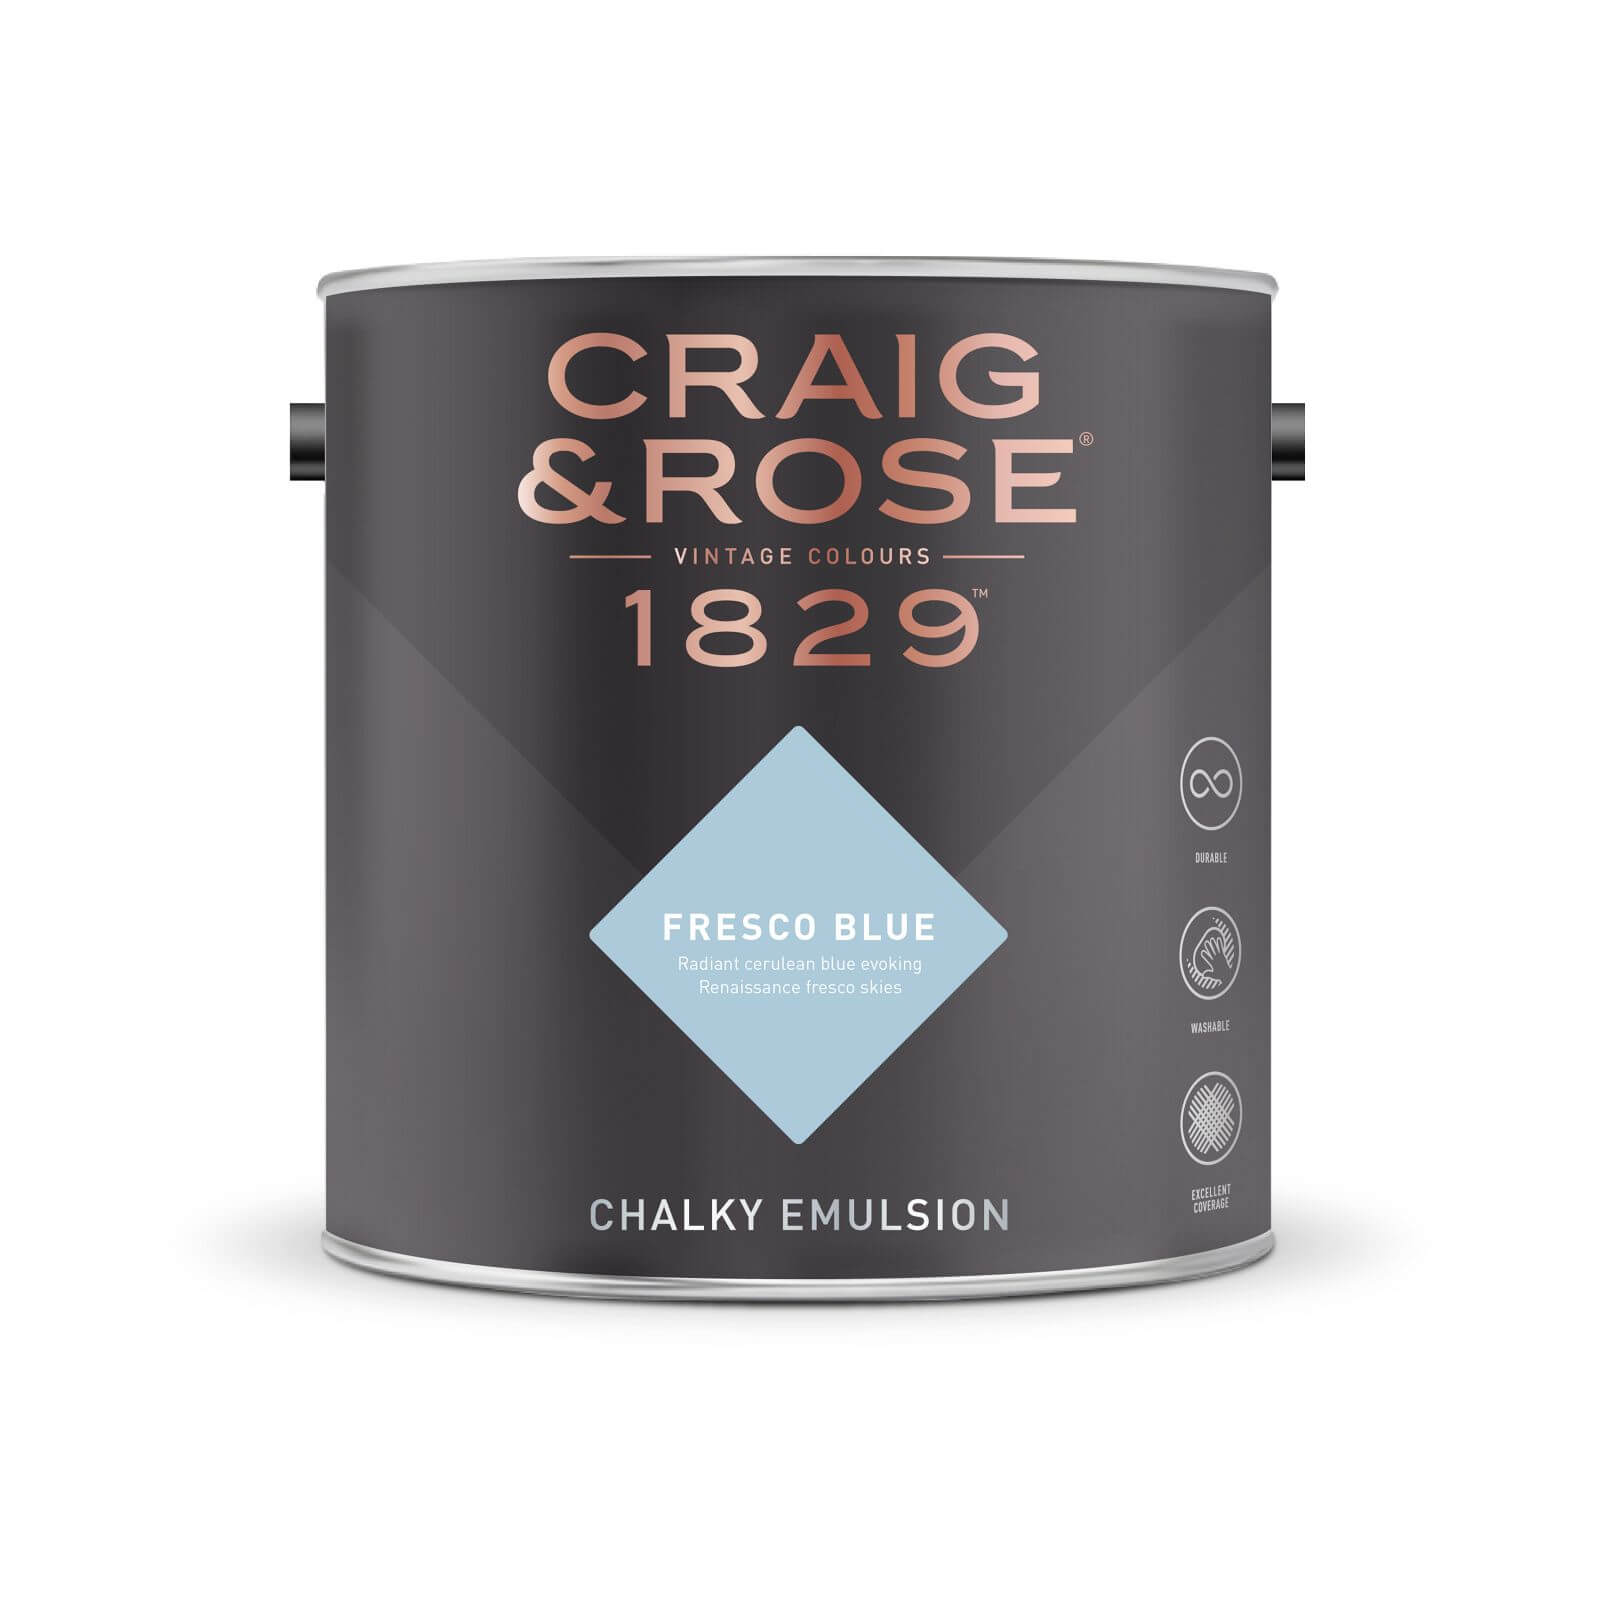 Craig & Rose 1829 Chalky Emulsion Paint Fresco Blue - Tester 50ml